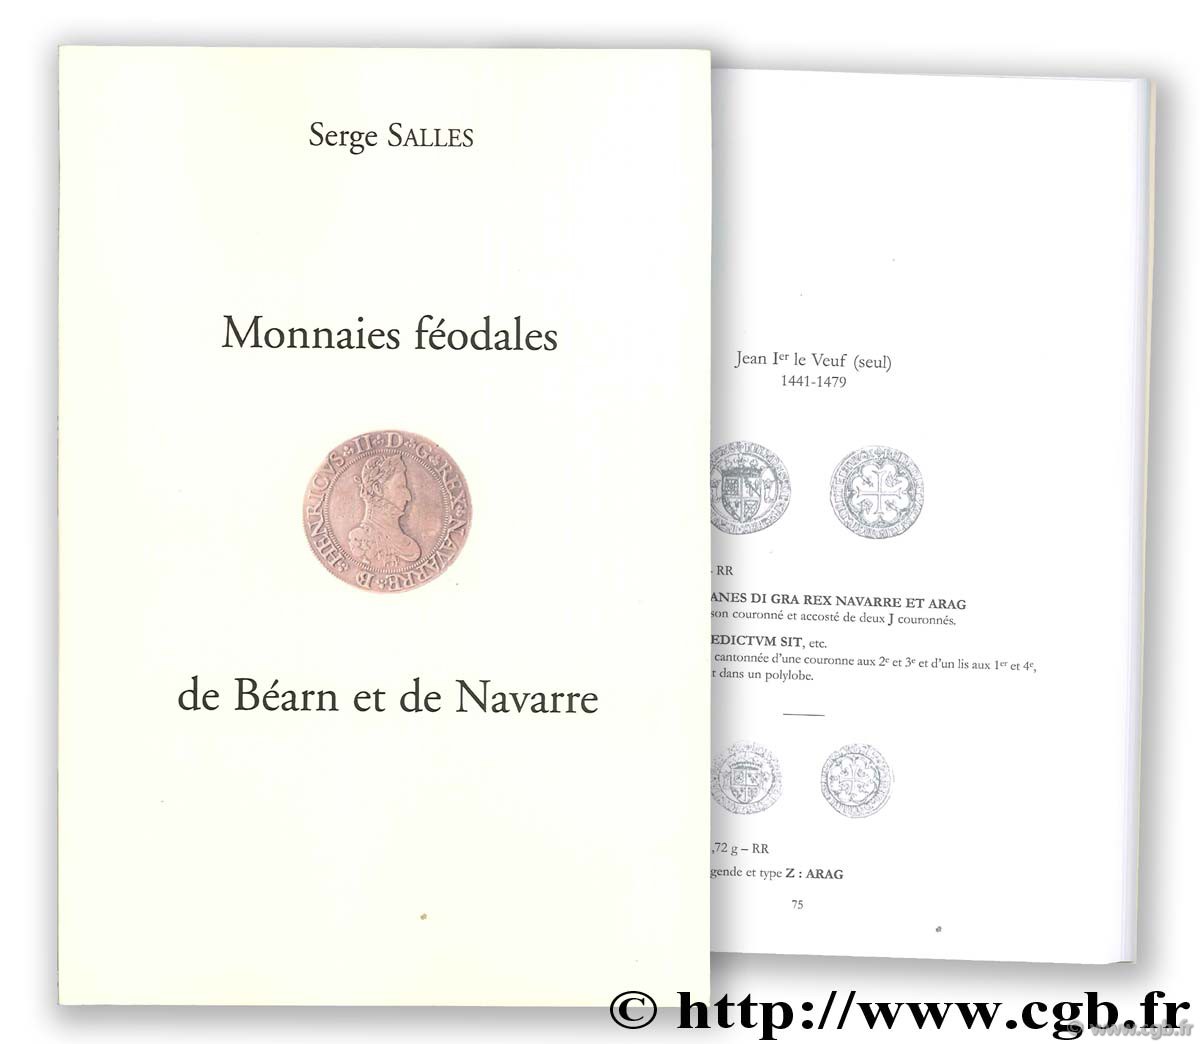 Monnaies féodales de Béarn et de Navarre SALLES Serge